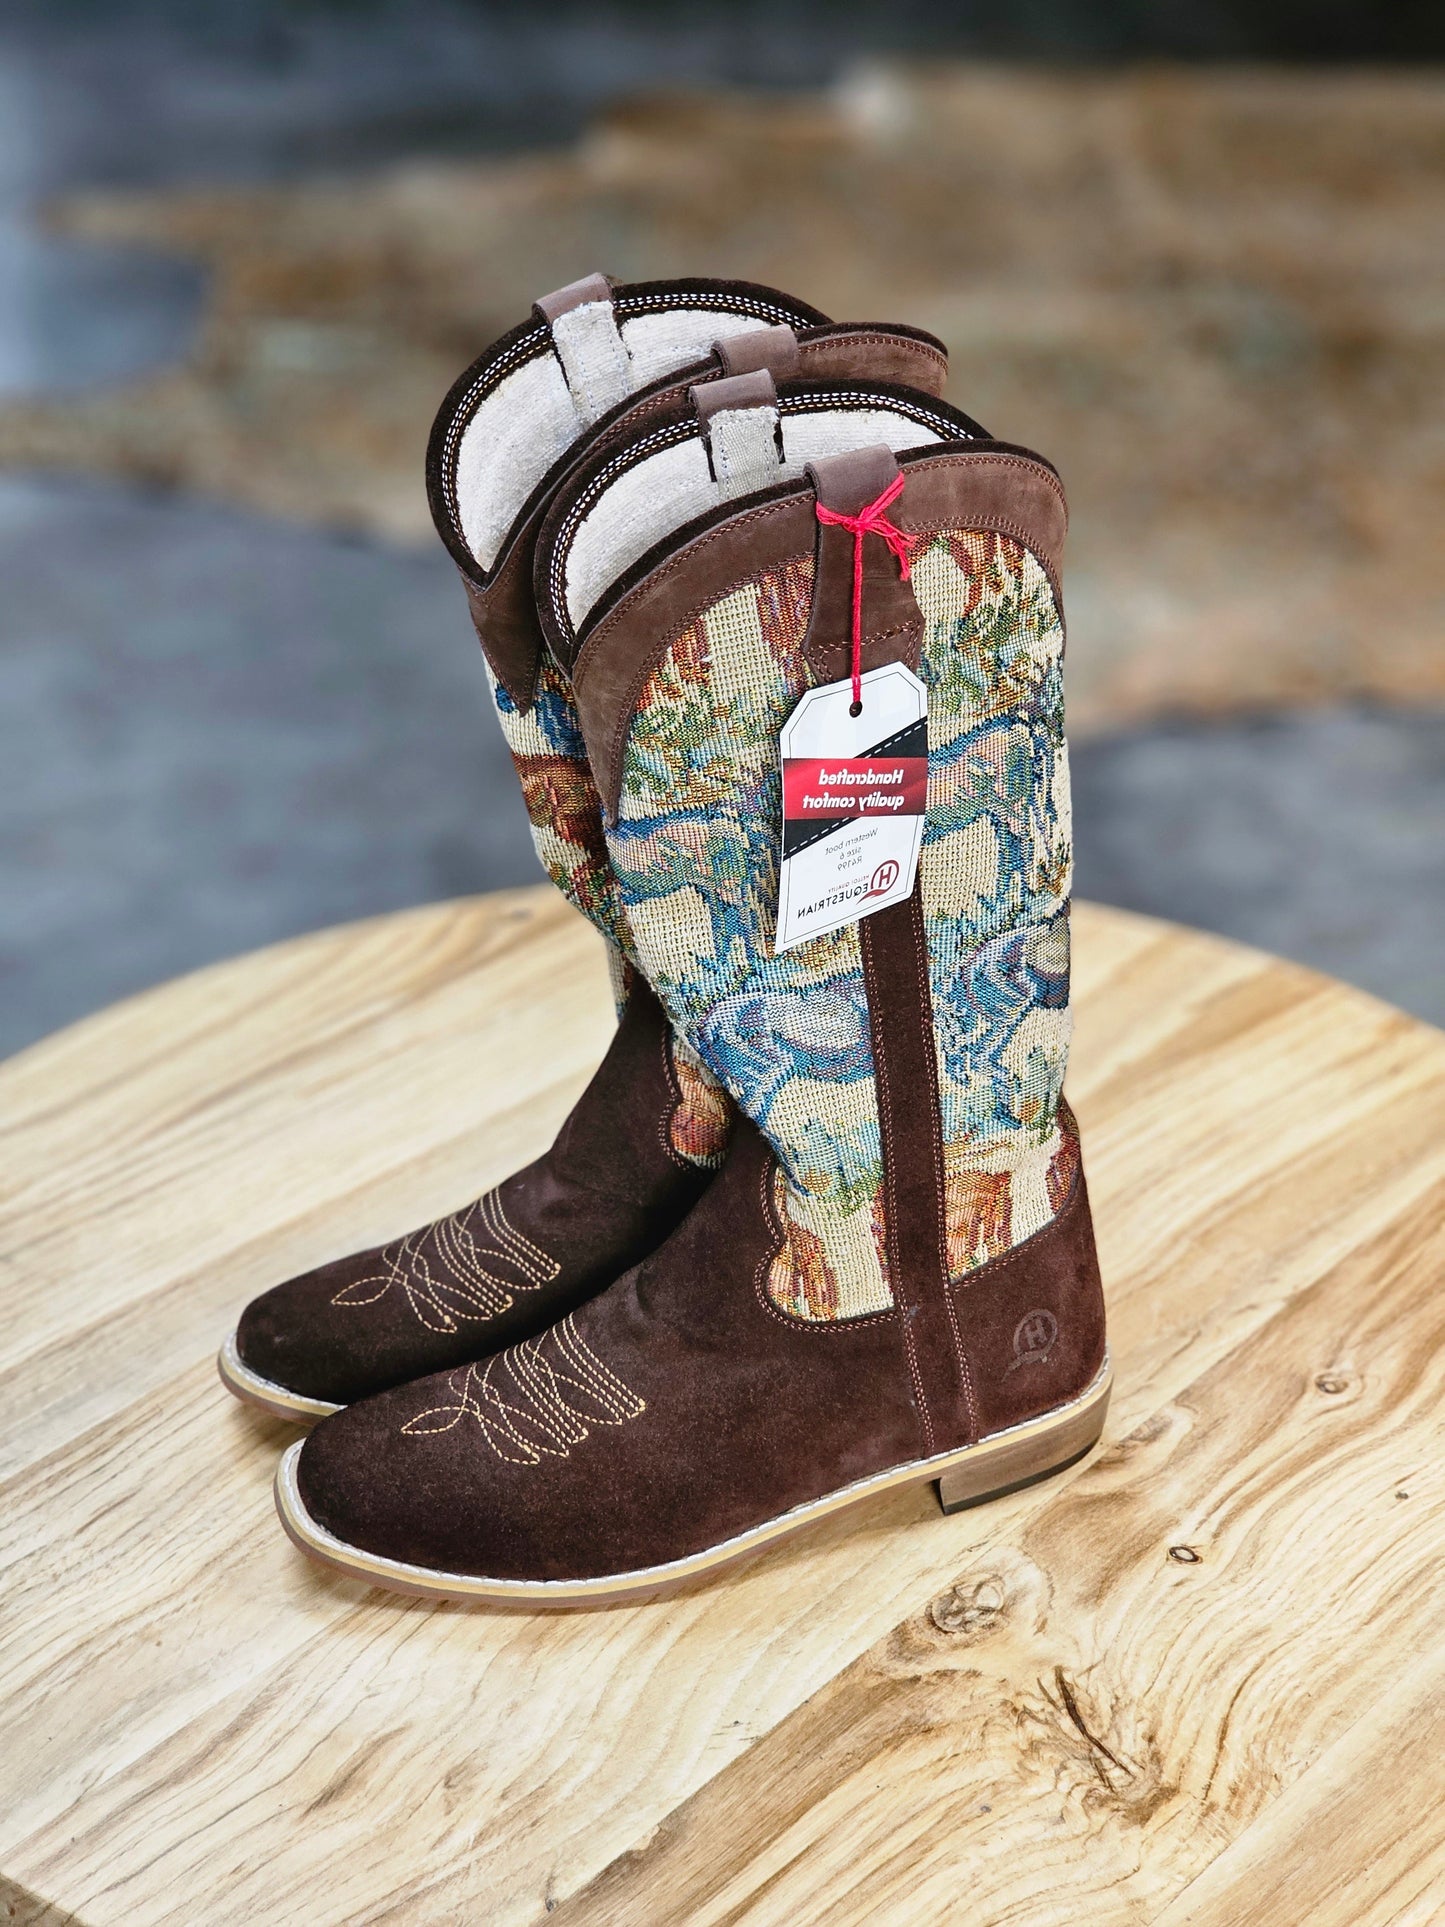 Nova cowboy boots